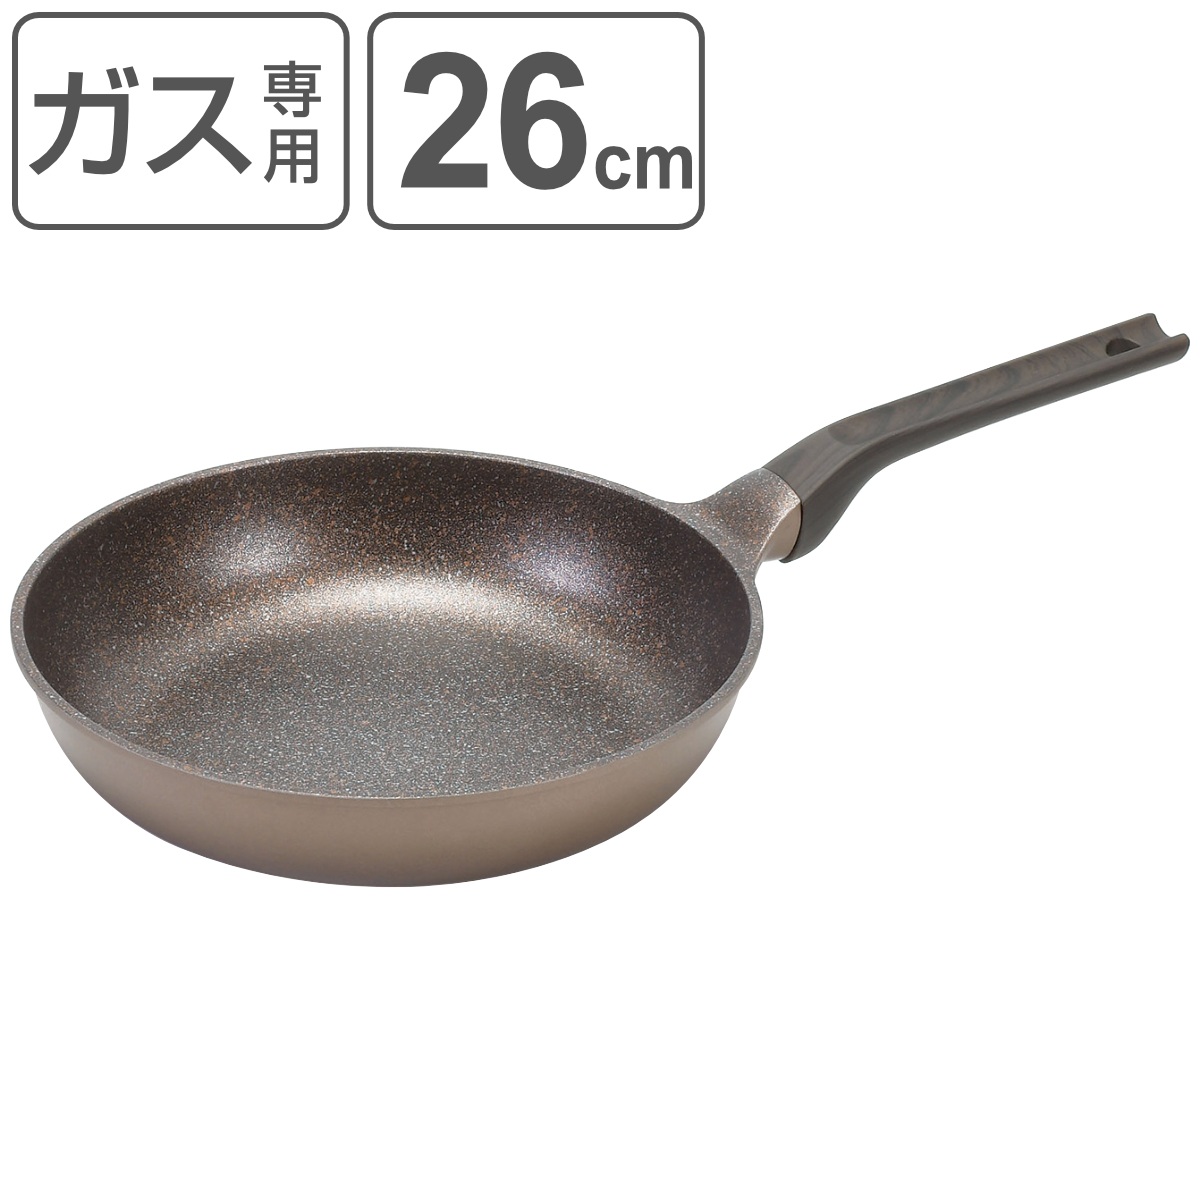 フライパン 26cm 菜箸が置ける メガストーンフライパン